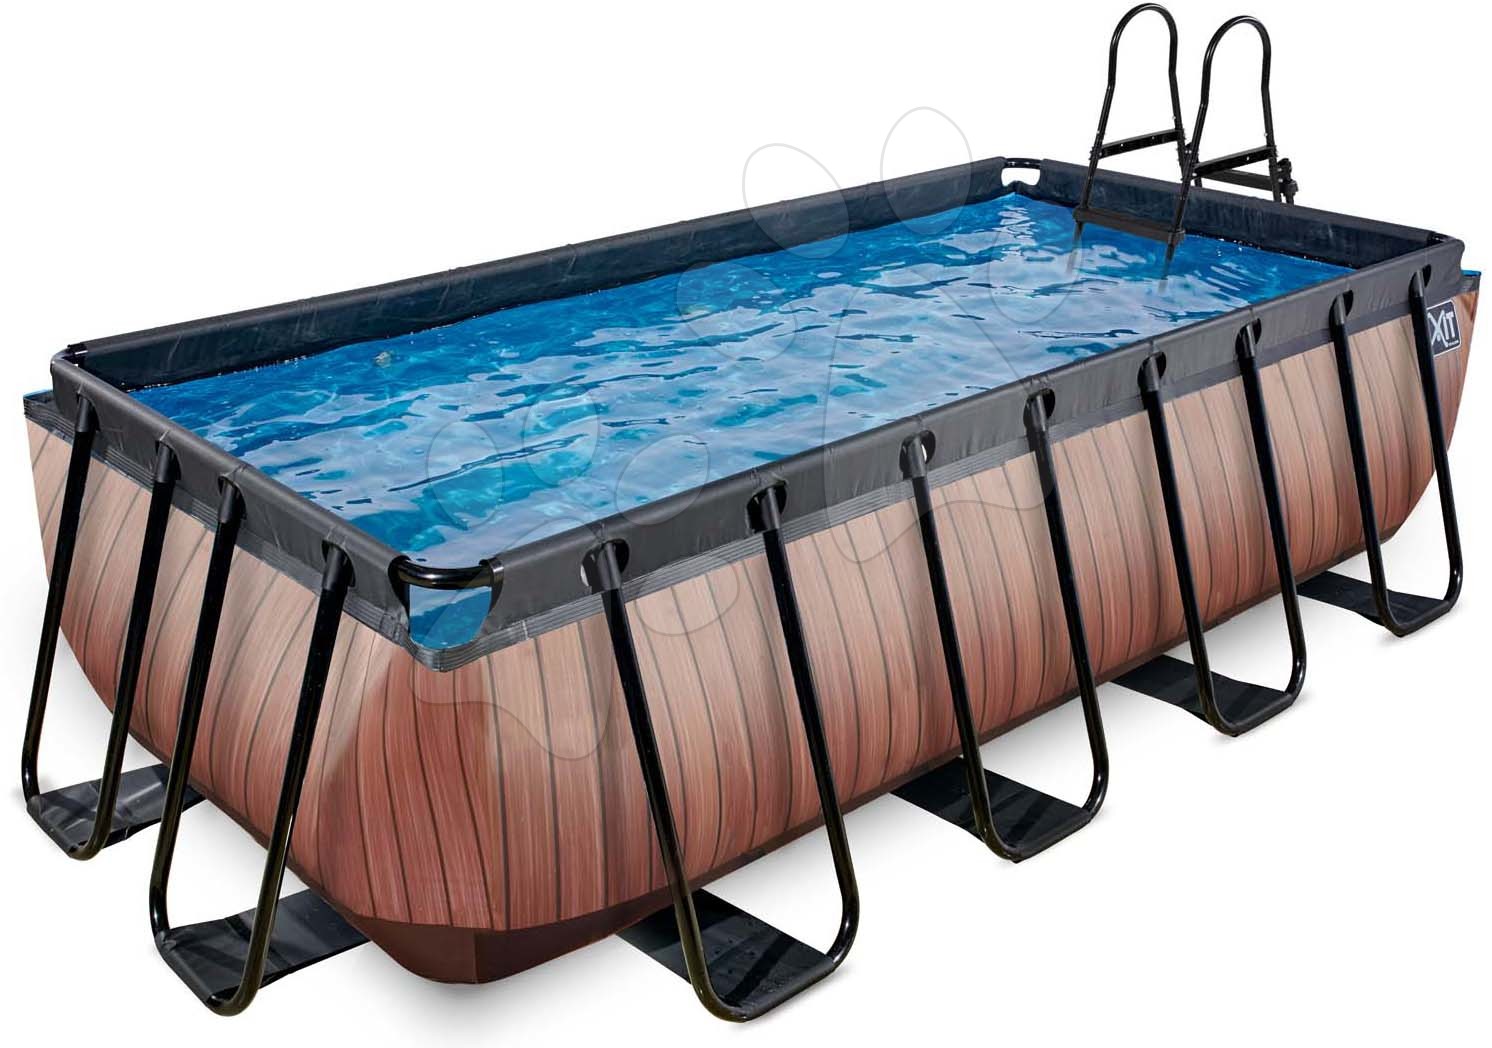 Bazén s filtrací Wood pool Exit Toys ocelová konstrukce 400*200*100 cm hnědý od 6 let